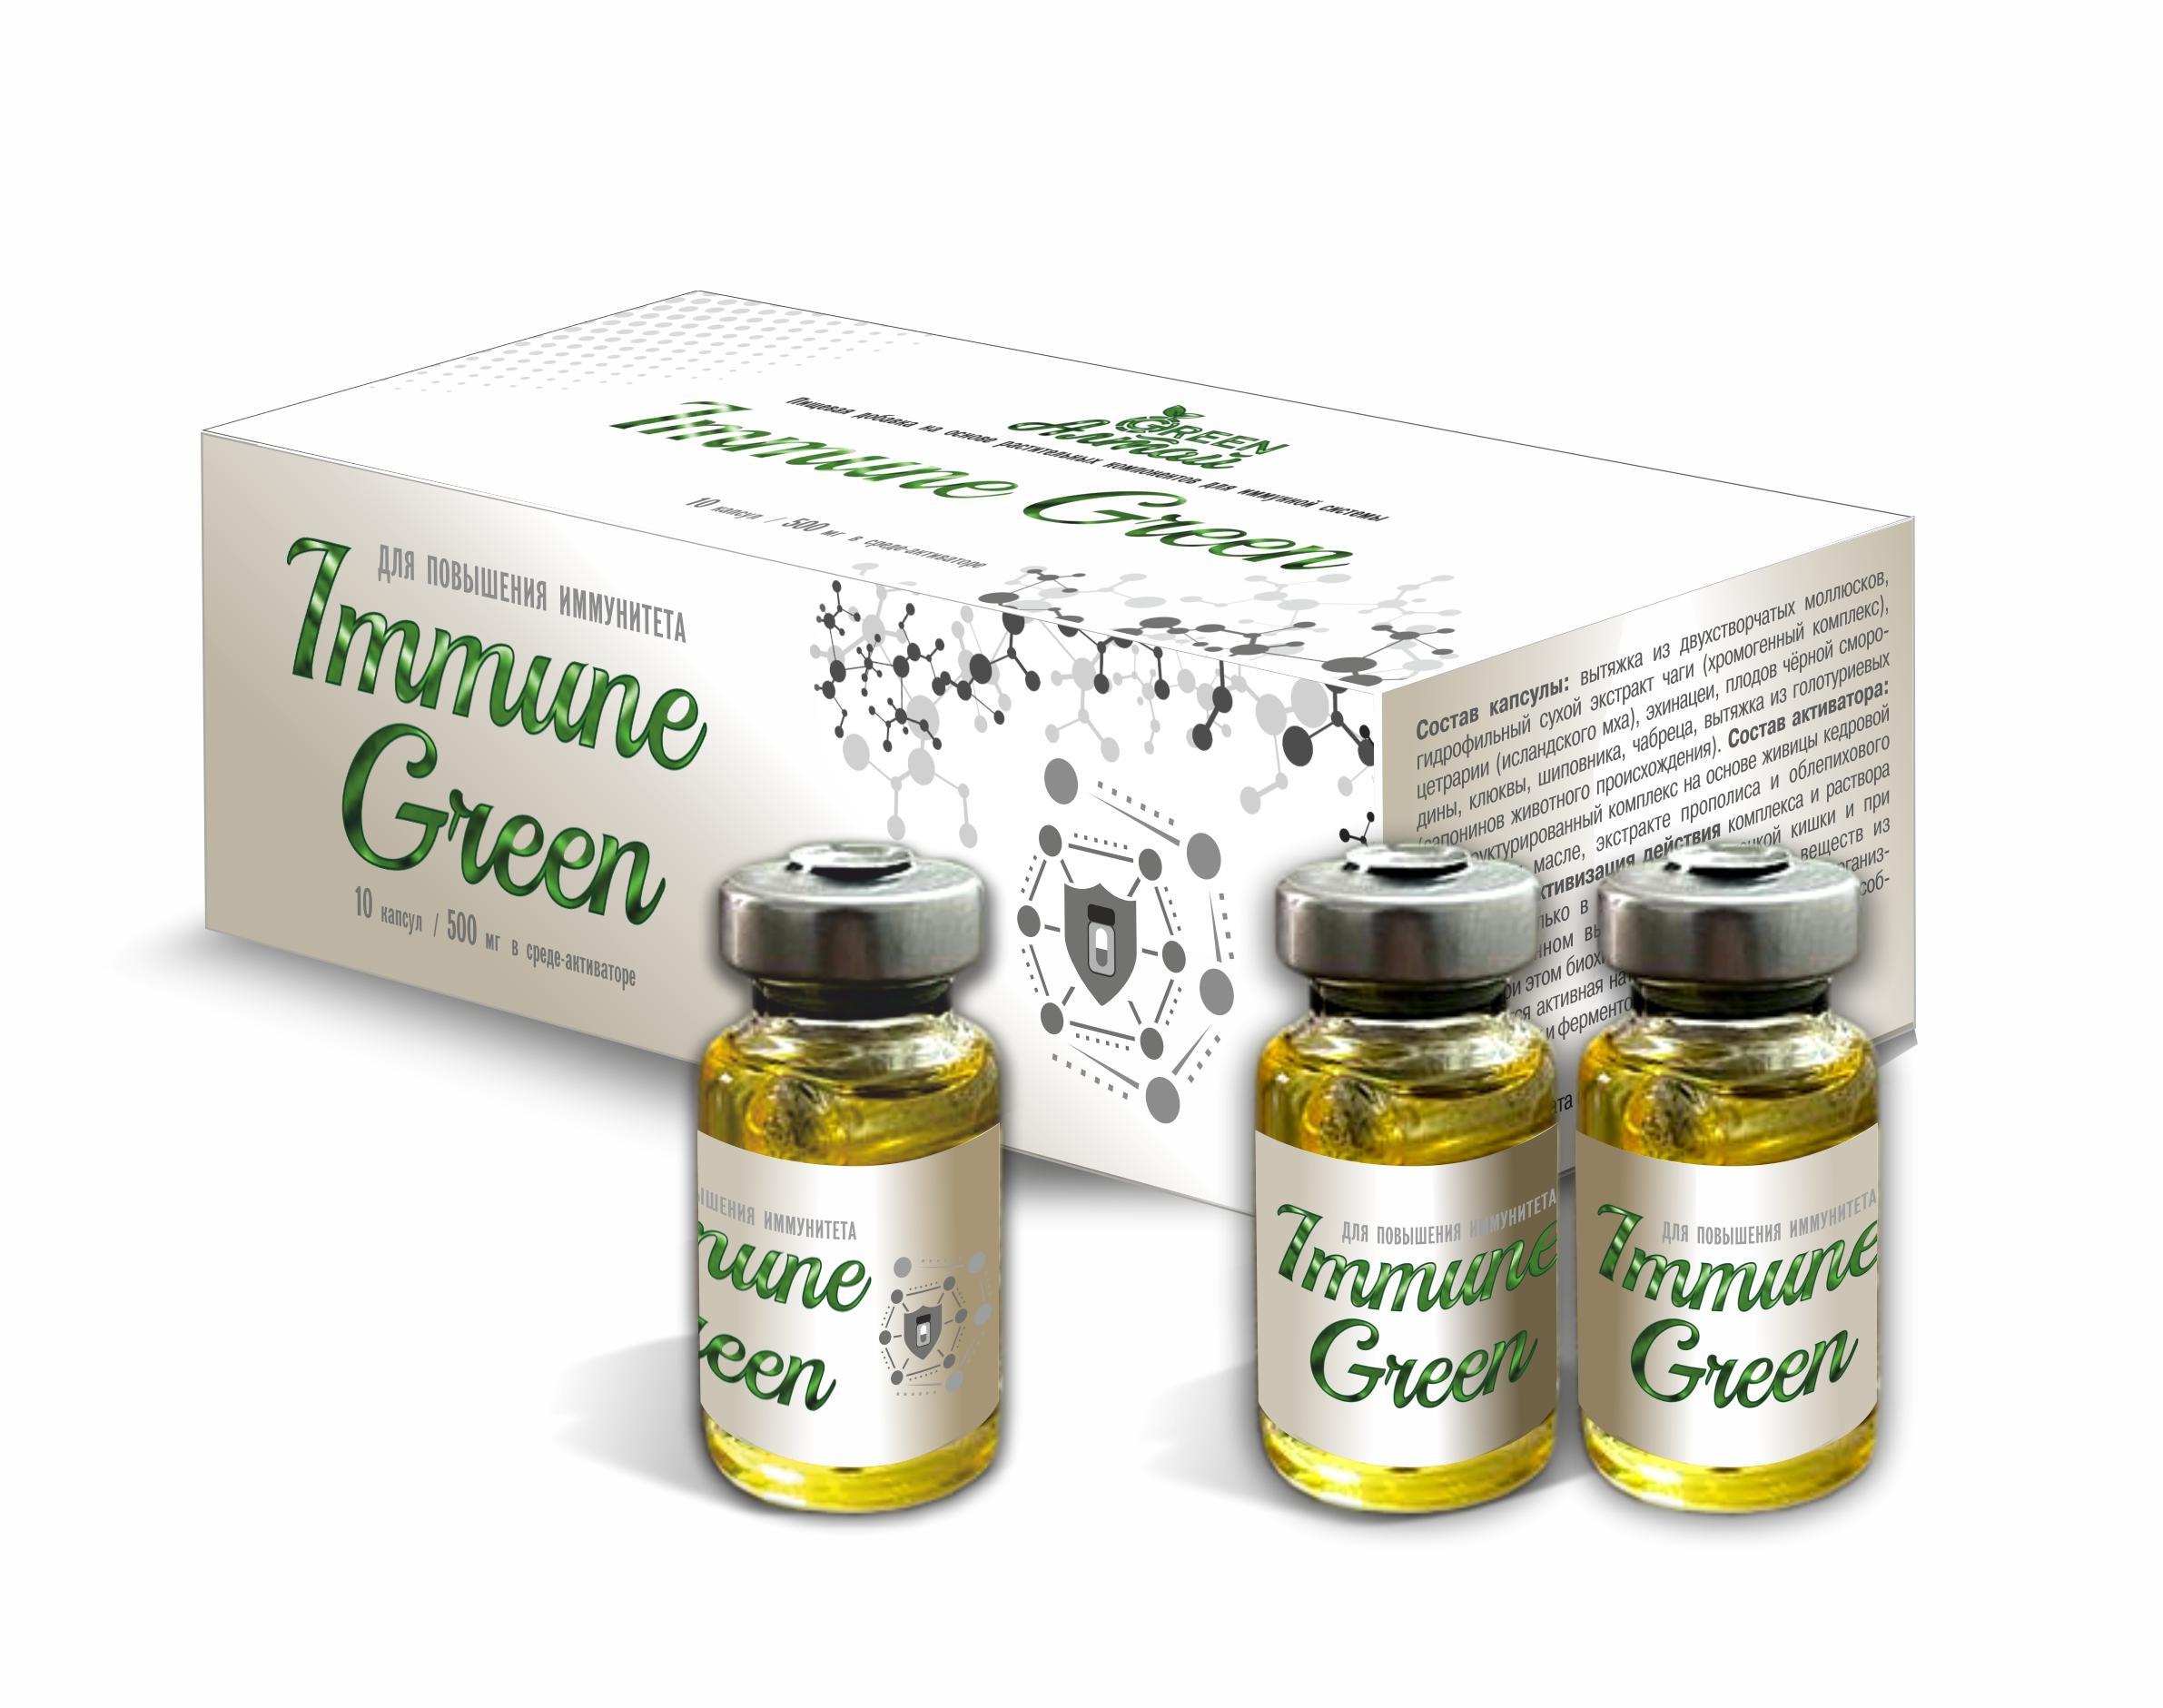 Immune Green Повышение иммунитета, капсула в среде-активаторе, 10 шт*500 мг, Амбрелла гельмичист противопаразитарное средство капсула в среде активаторе 10 шт 500 мг амбрелла